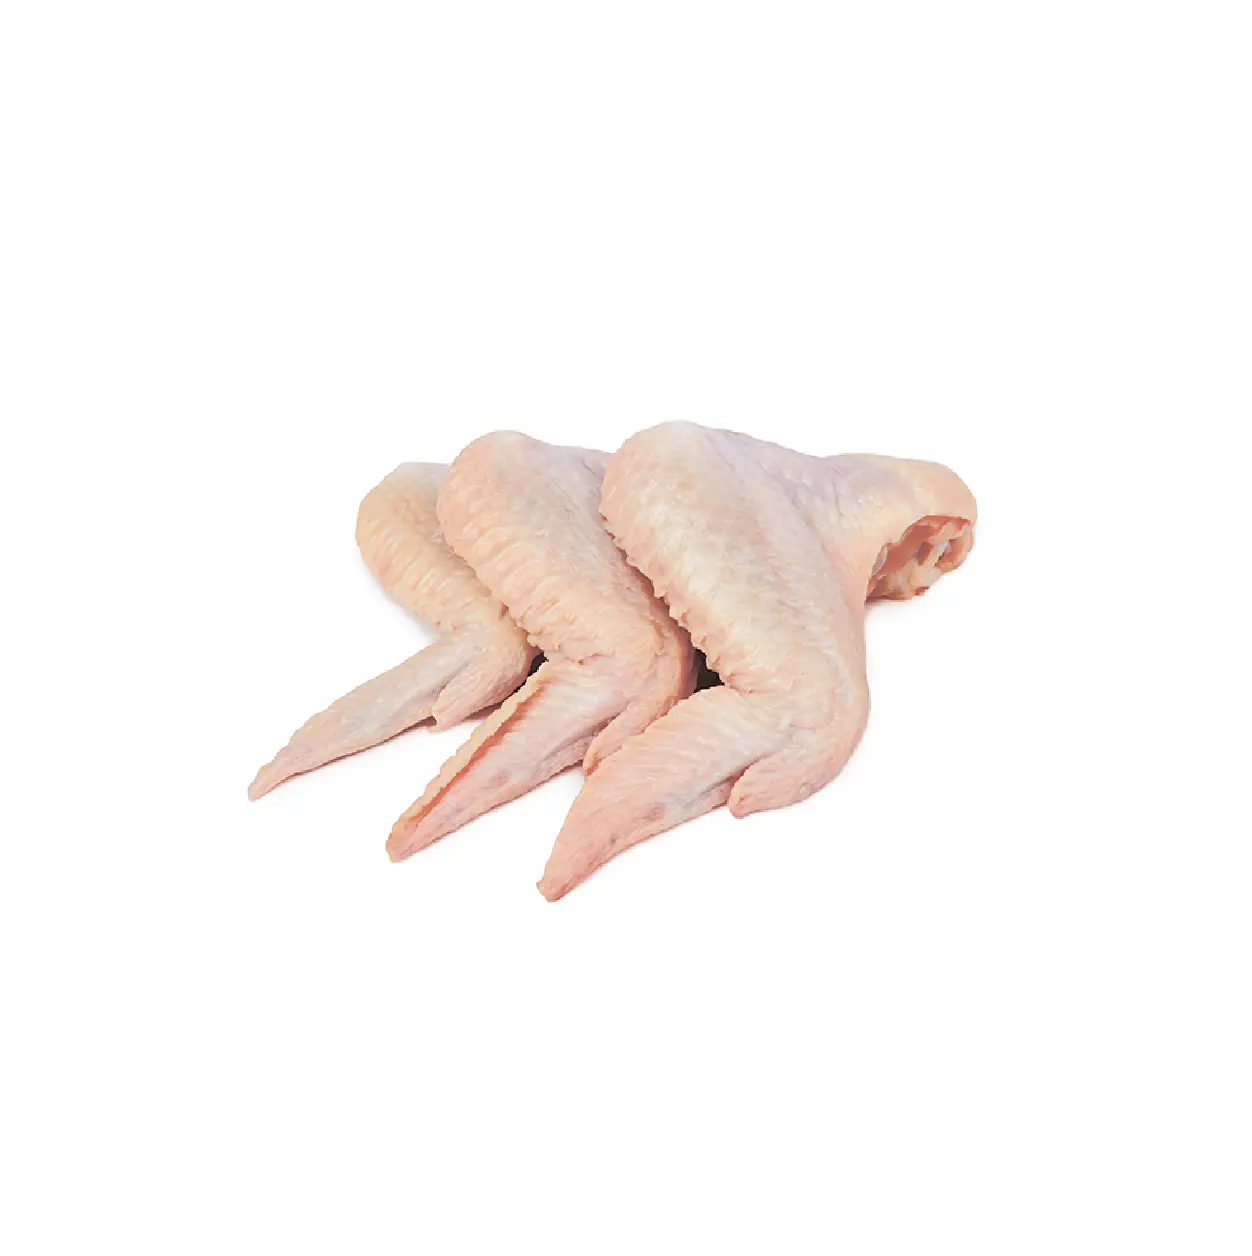 أطراف على شكل أجنحة من الدجاج المجمد 3 مفاصل - السعر بالجملة (ملمس حلال معتمد كريسبي مثالي لتناول الوجبات الخفيفة)